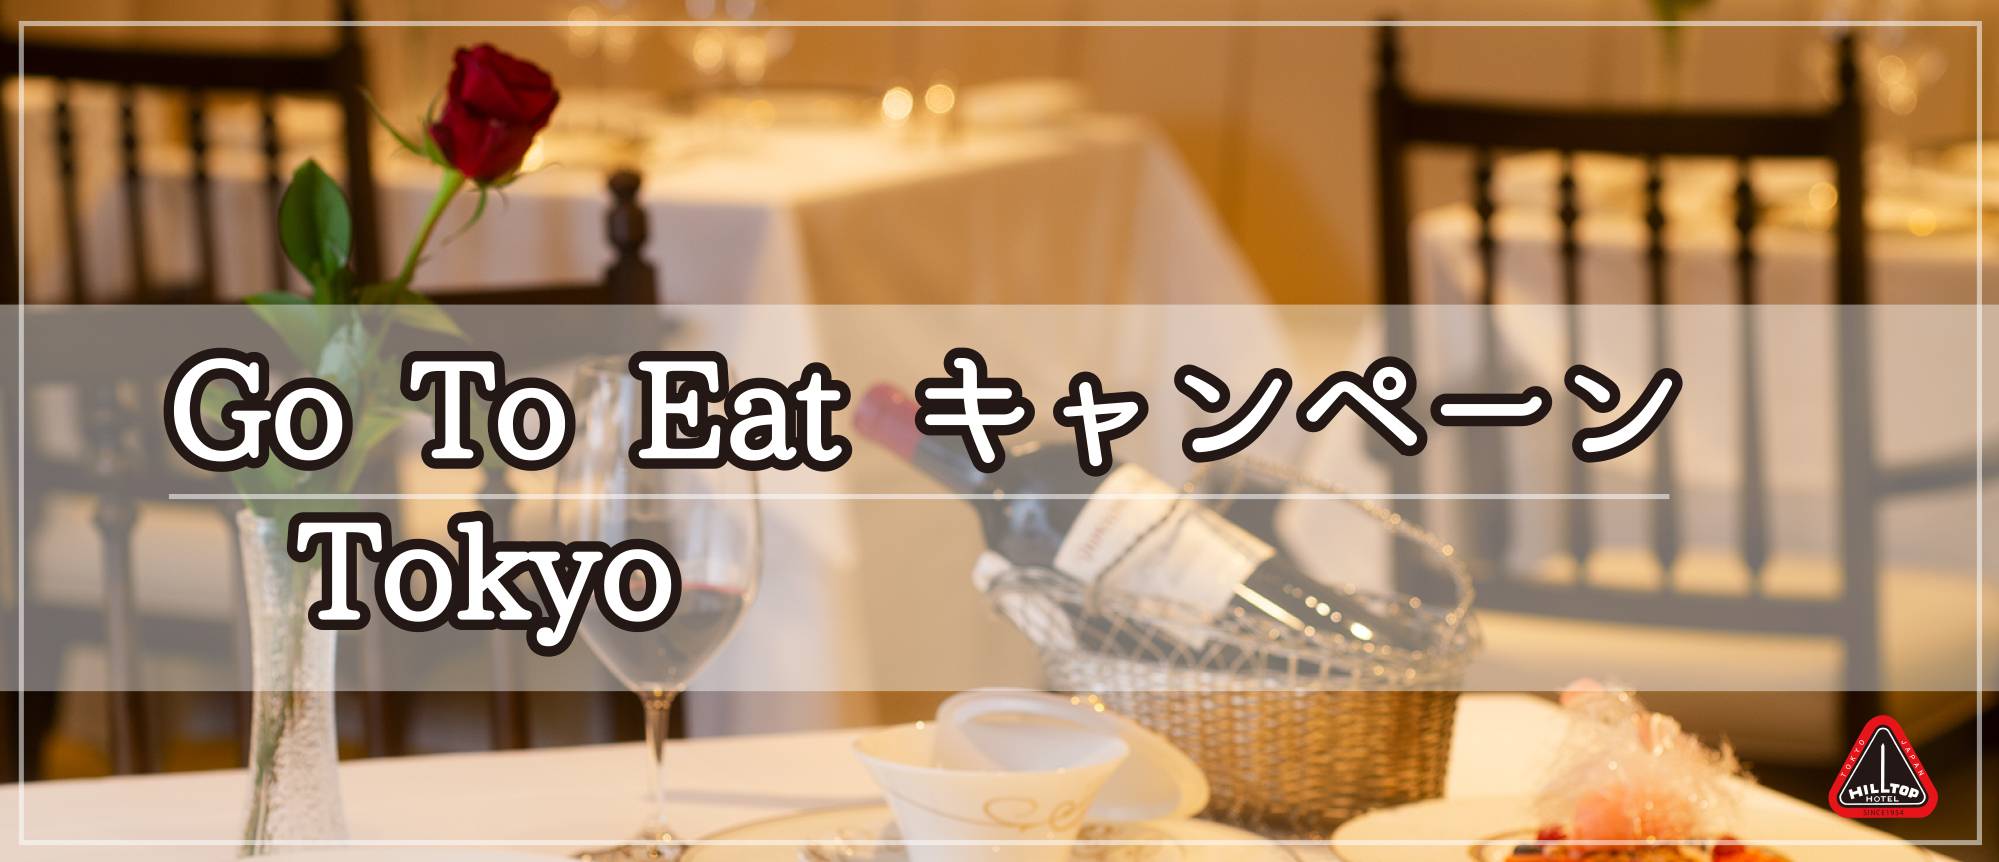 写真: 【終了いたしました】Go To Eat キャンペーン Tokyo について